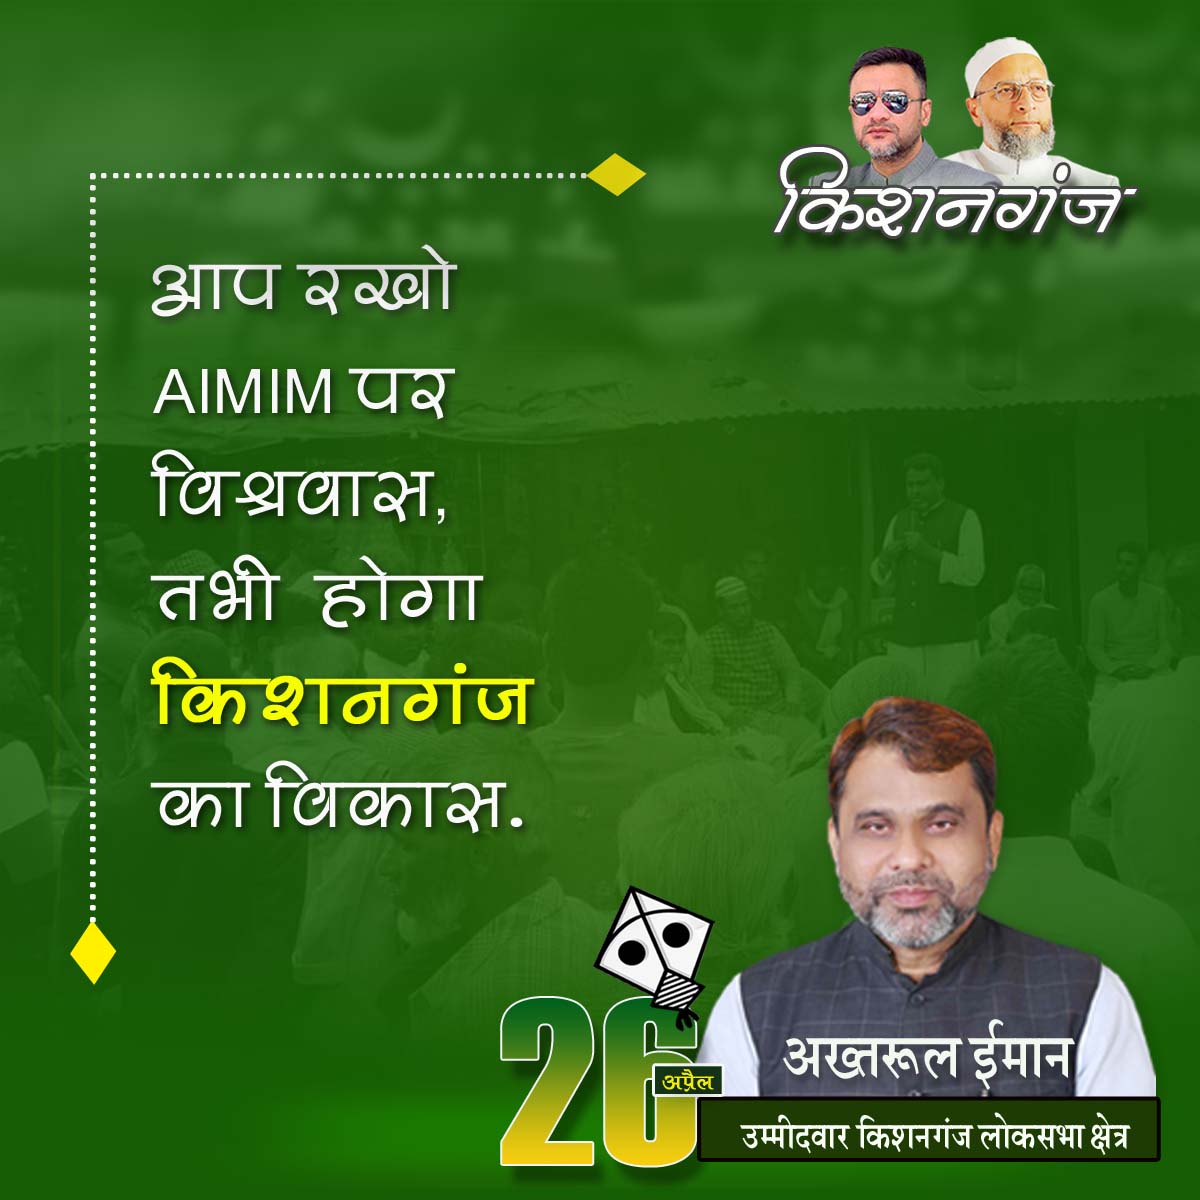 आप रखो AIMIM पर विश्वास 
तभी होगा किशनगंज का विकास 

किशनगंज वासियों से अपील है कि 26 अप्रैल को अपना बहुमूल्य वोट AIMIM के प्रत्याशी @Akhtaruliman5 को देकर कामयाब करें।

#AIMIM #Akhtaruliman #Kishanganj #LokSabhaElection2024 #Voteforkite #26april #Bihar #India